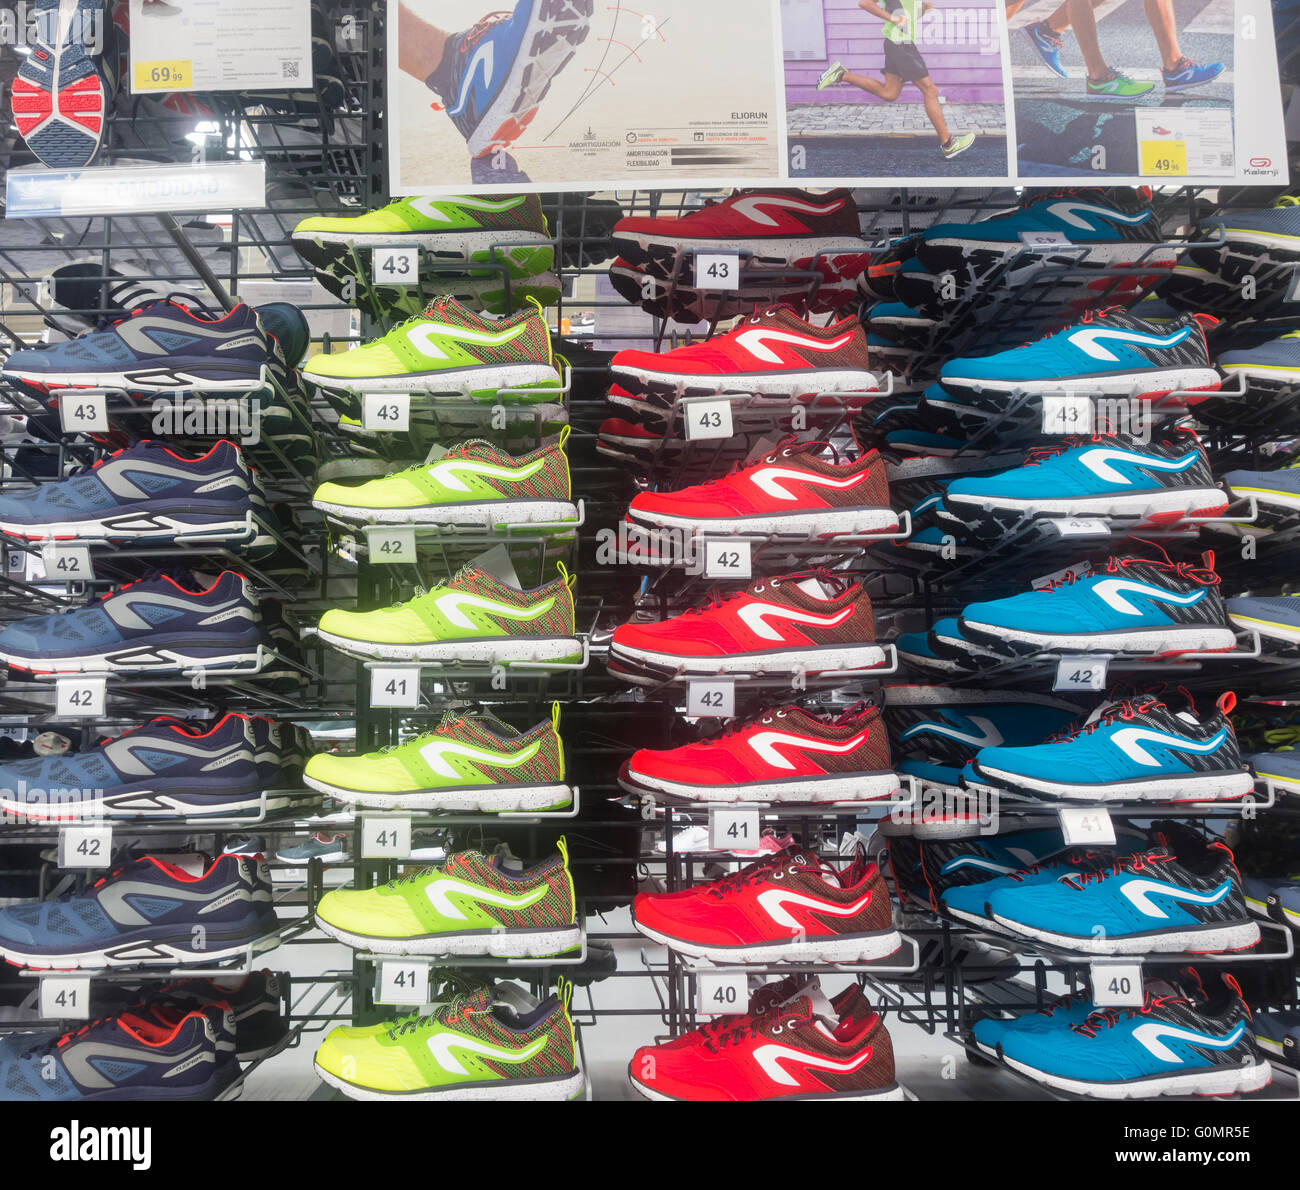 Chaussures de course de marque Kalenji décathlon en magasin. "Kalenji" est  la propre Decathlon tournant (chaussures et vêtements de marque Photo Stock  - Alamy